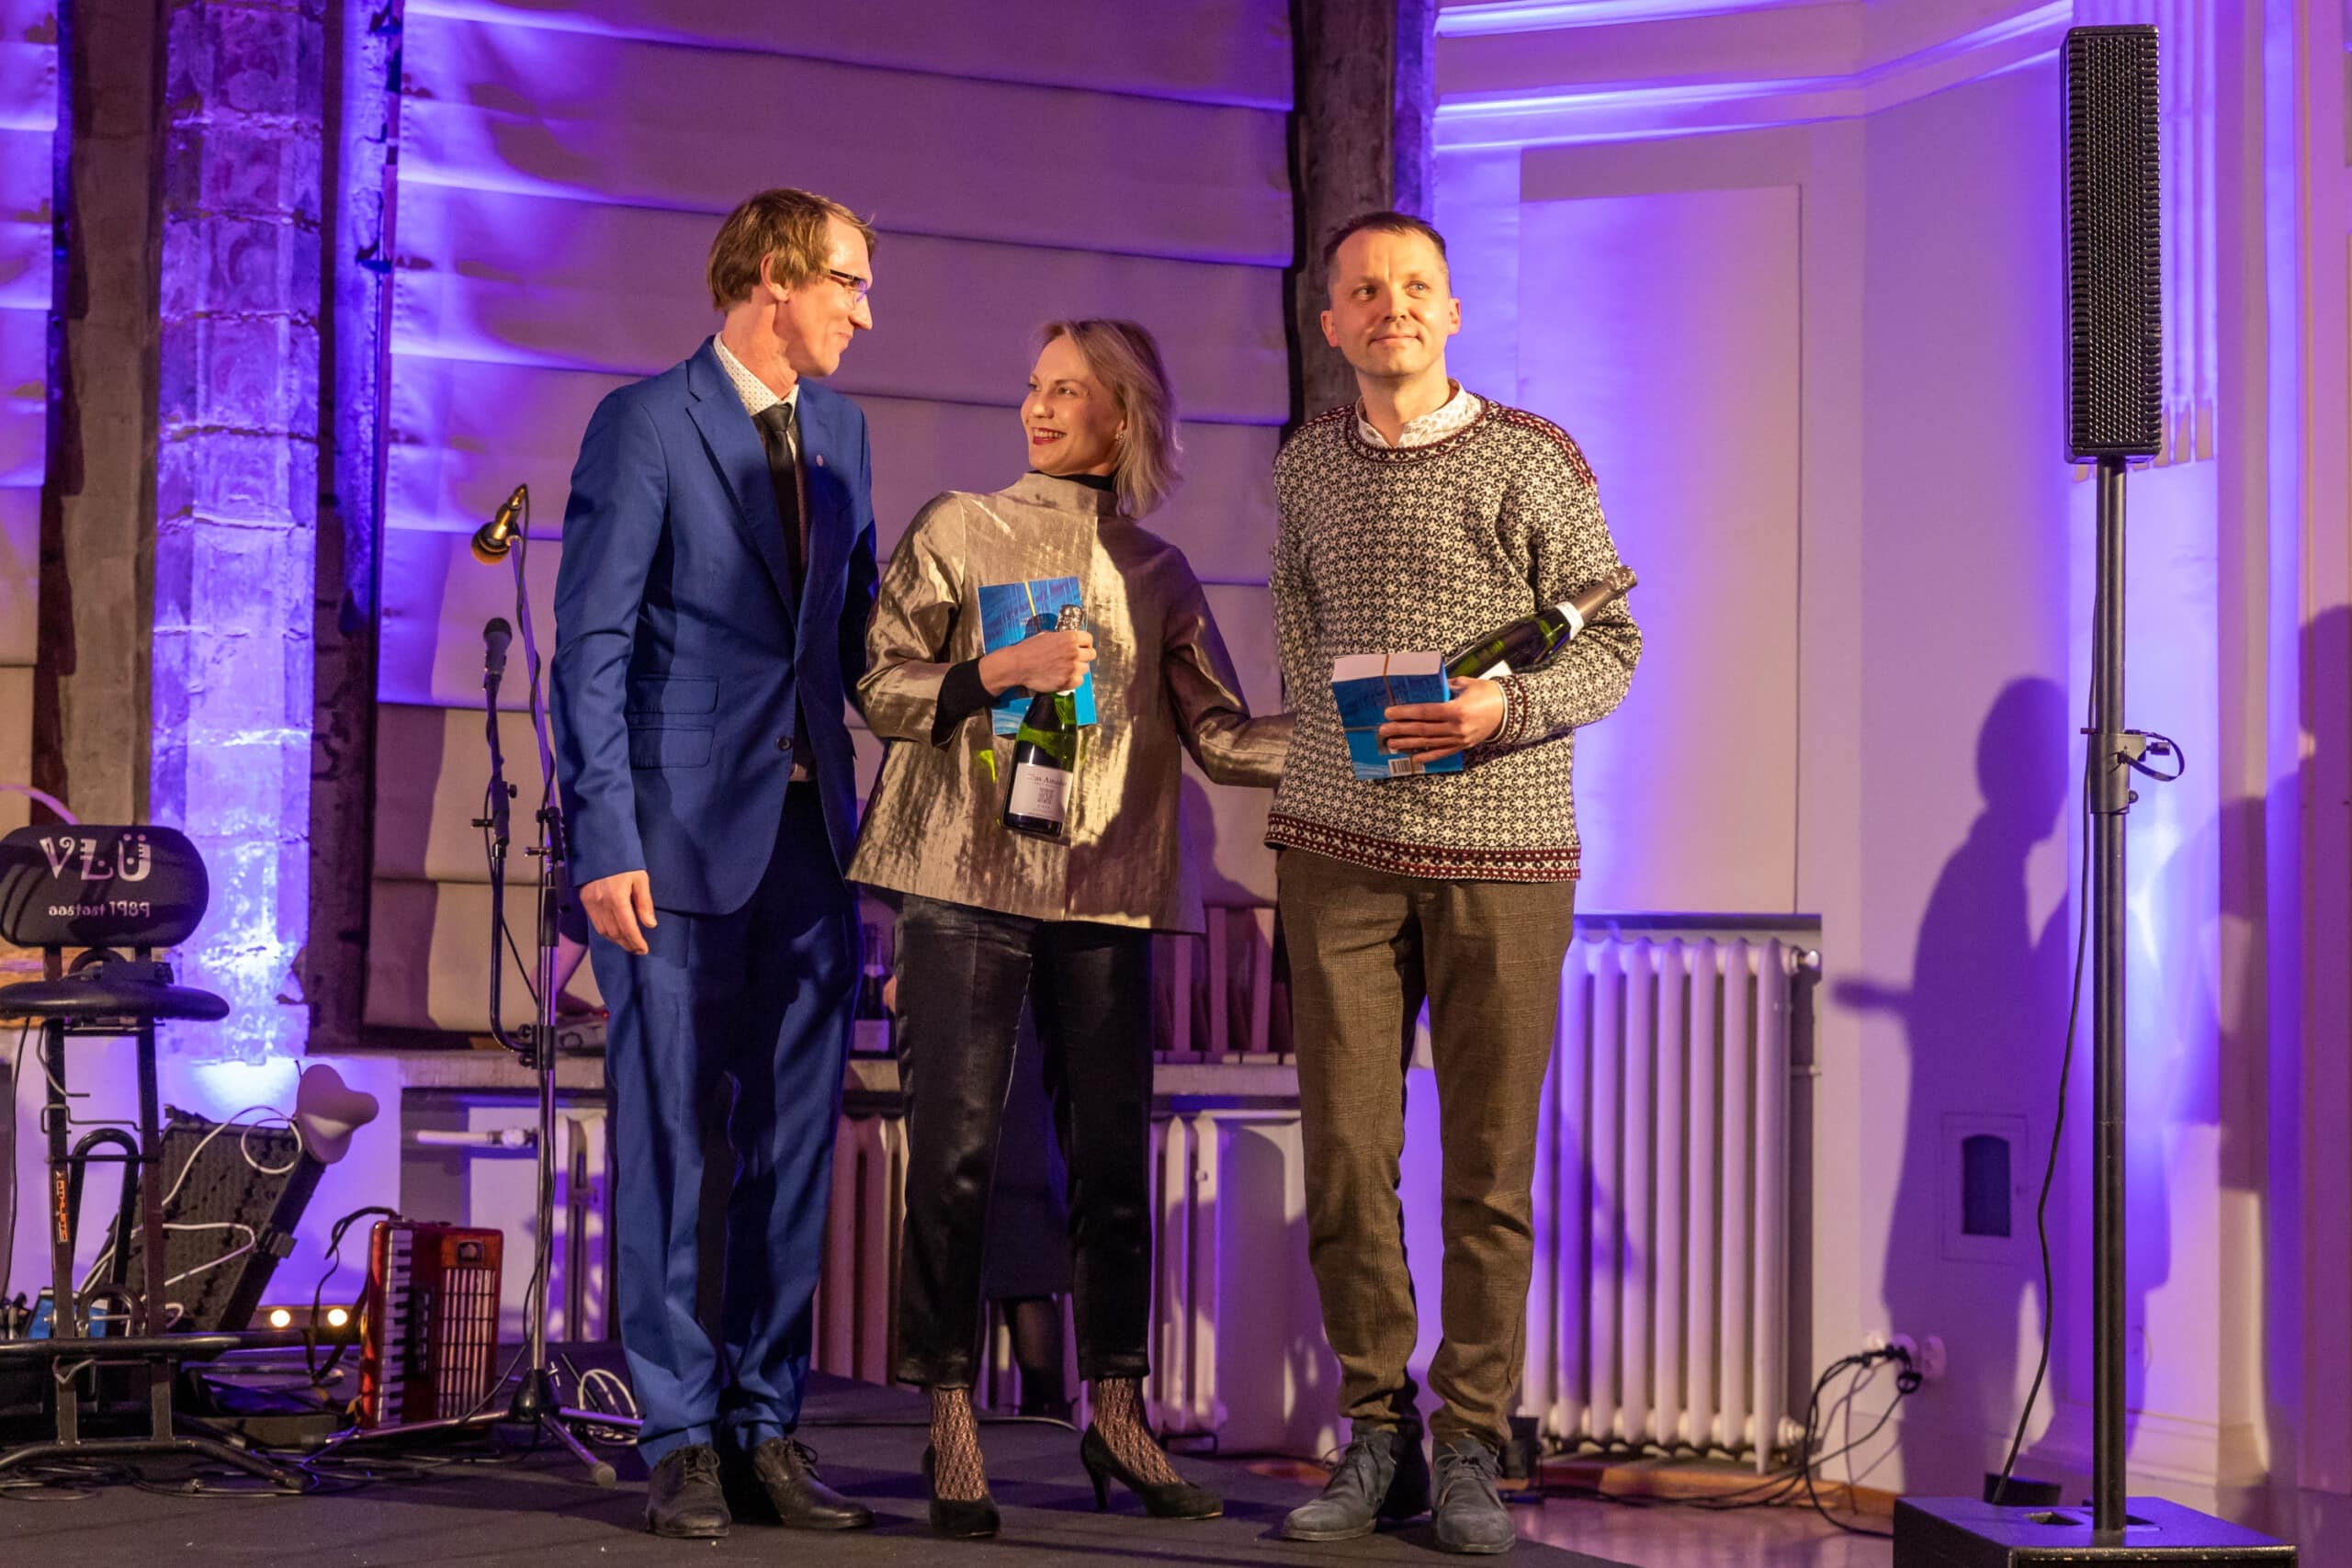 Pildil on koos Tallinna Linnateatri direktori Mihkel Kübaraga näitlejad Külli Teetamm ja Argo Aadli, kes on äsja preemiaks saanud raamatu ja pudeli vahuveini. Nad seisavad kõrvuti väikese lava peal.